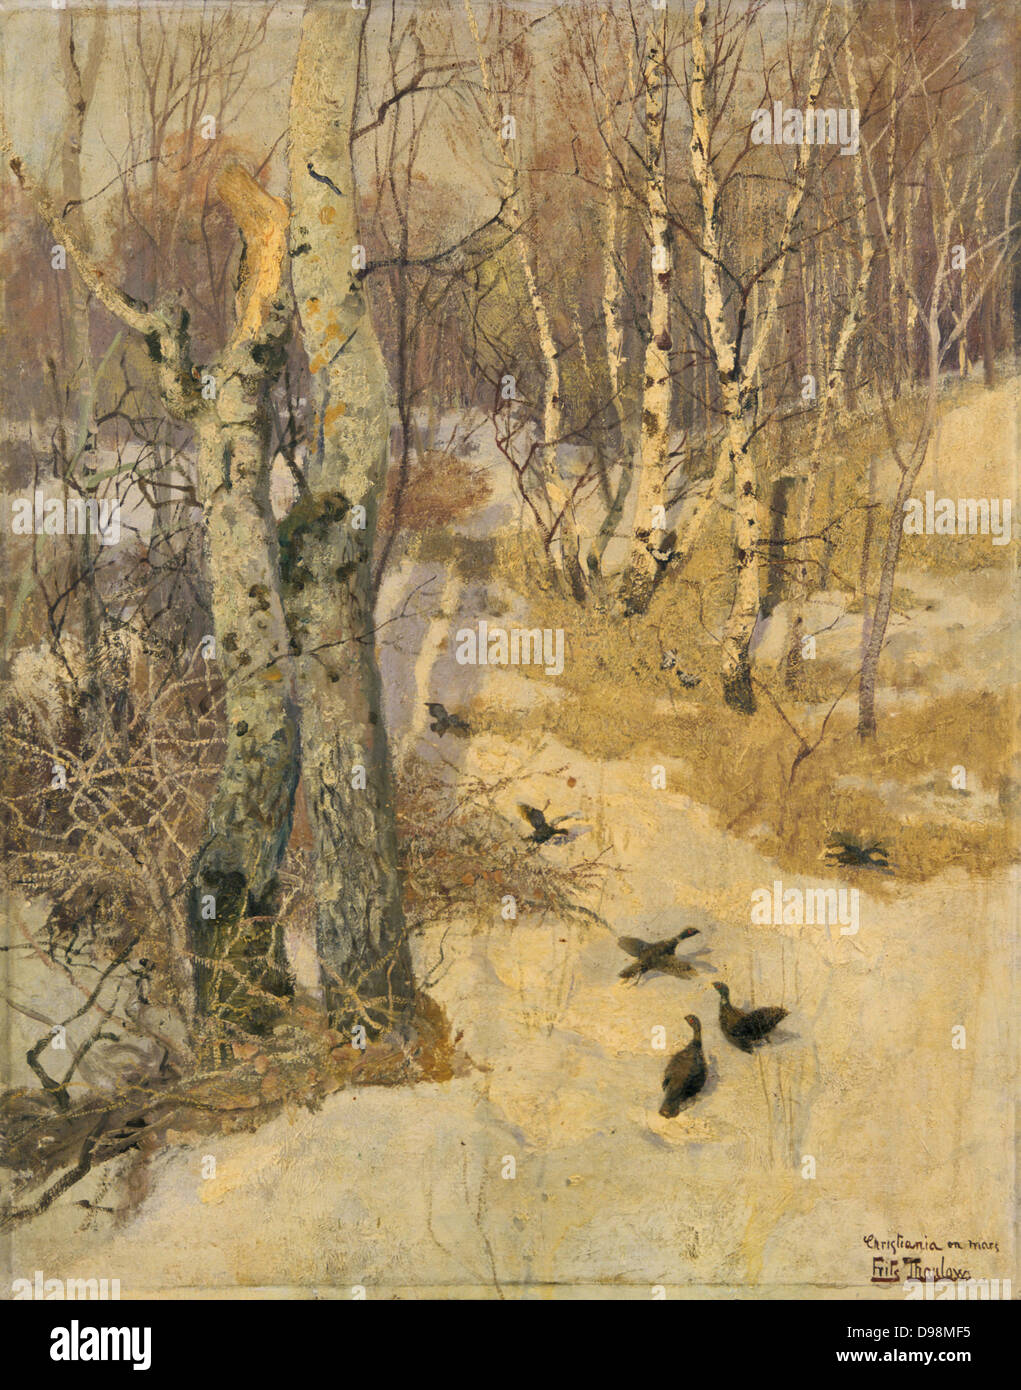 Woodland Pfad unter Schnee. Öl auf Leinwand. Fritz Thaulow (1847-1906), norwegischer Maler. Winter kalt Spiel Vogel Fasan Baum Birke Stockfoto